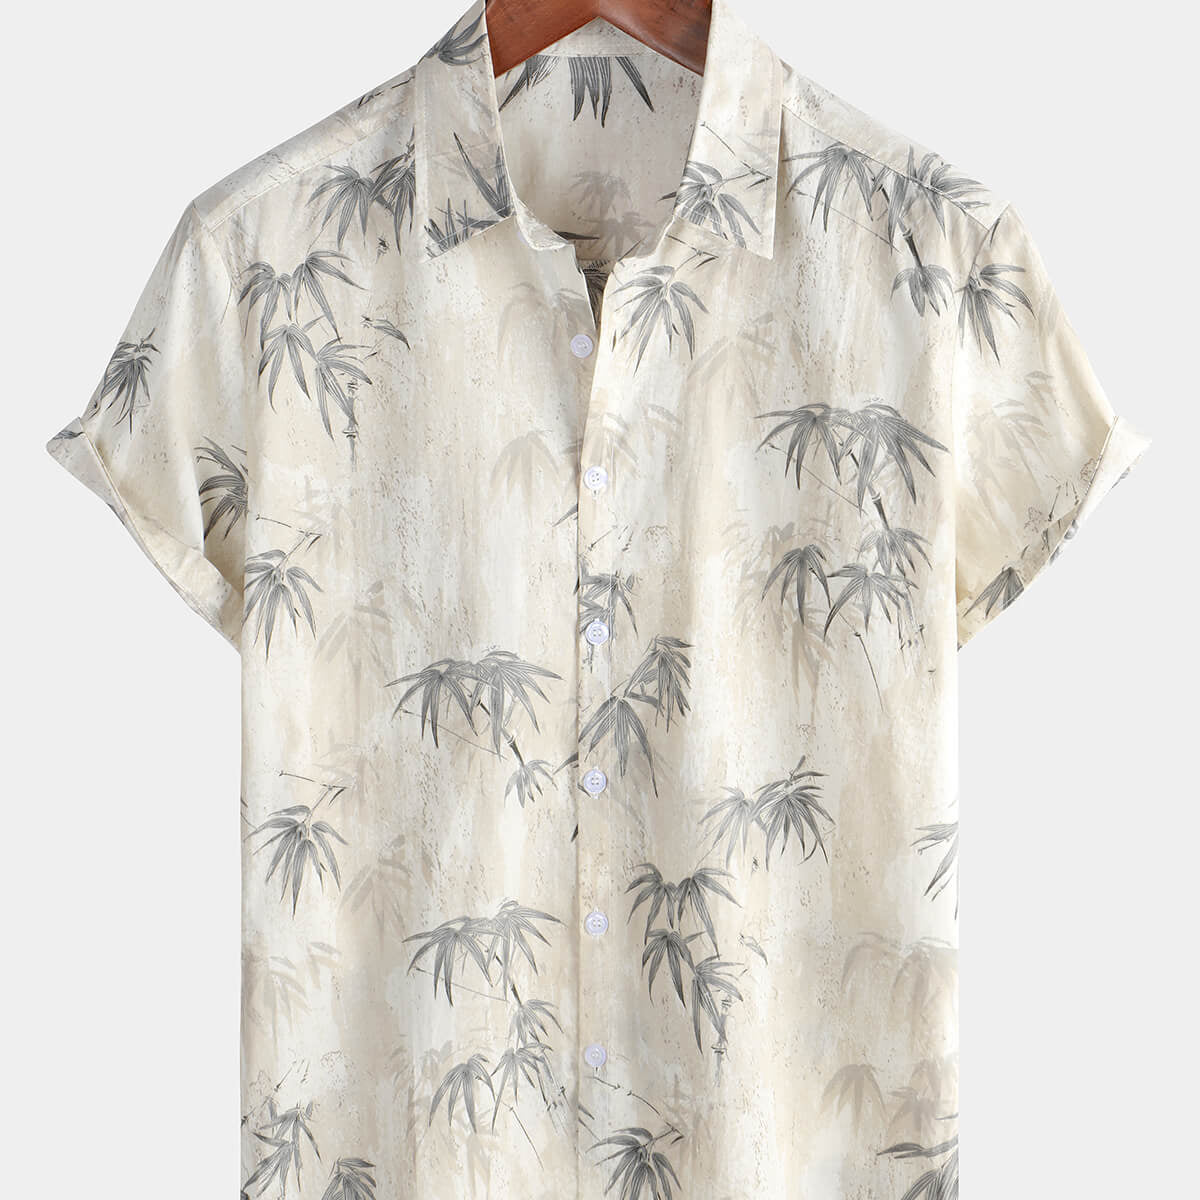 Chemise boutonnée à manches courtes pour hommes, Vintage, vacances, été, décontractée